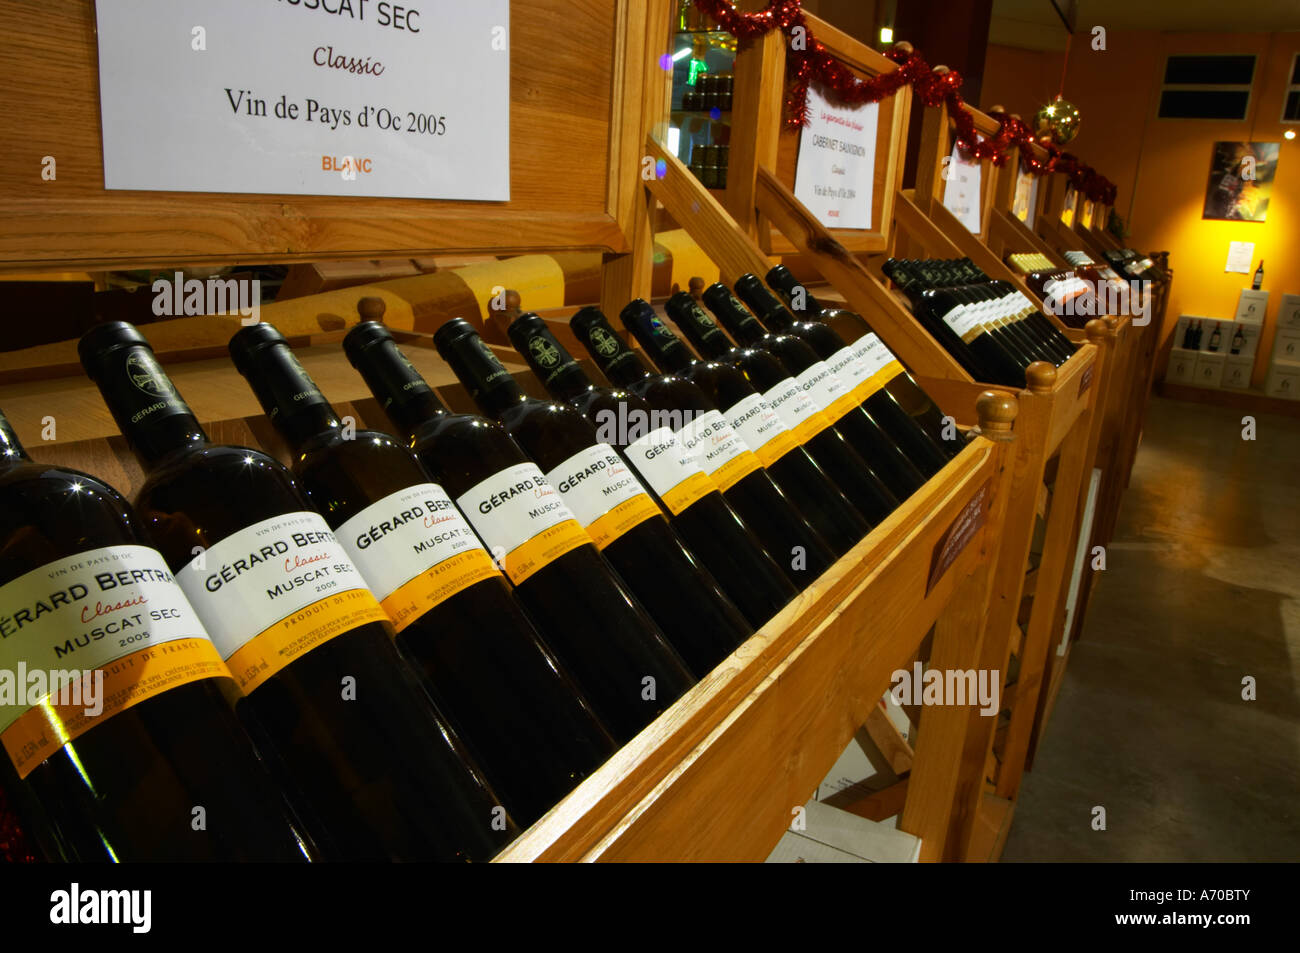 Muscat Sec Classic Vin de Pays d'Oc 2005 sul display. Domaine Gerard Bertrand, Chateau l'Hospitalet. La Clape. Languedoc. Il negozio del vino e la sala di degustazione. La Francia. L'Europa. Bottiglia. Foto Stock